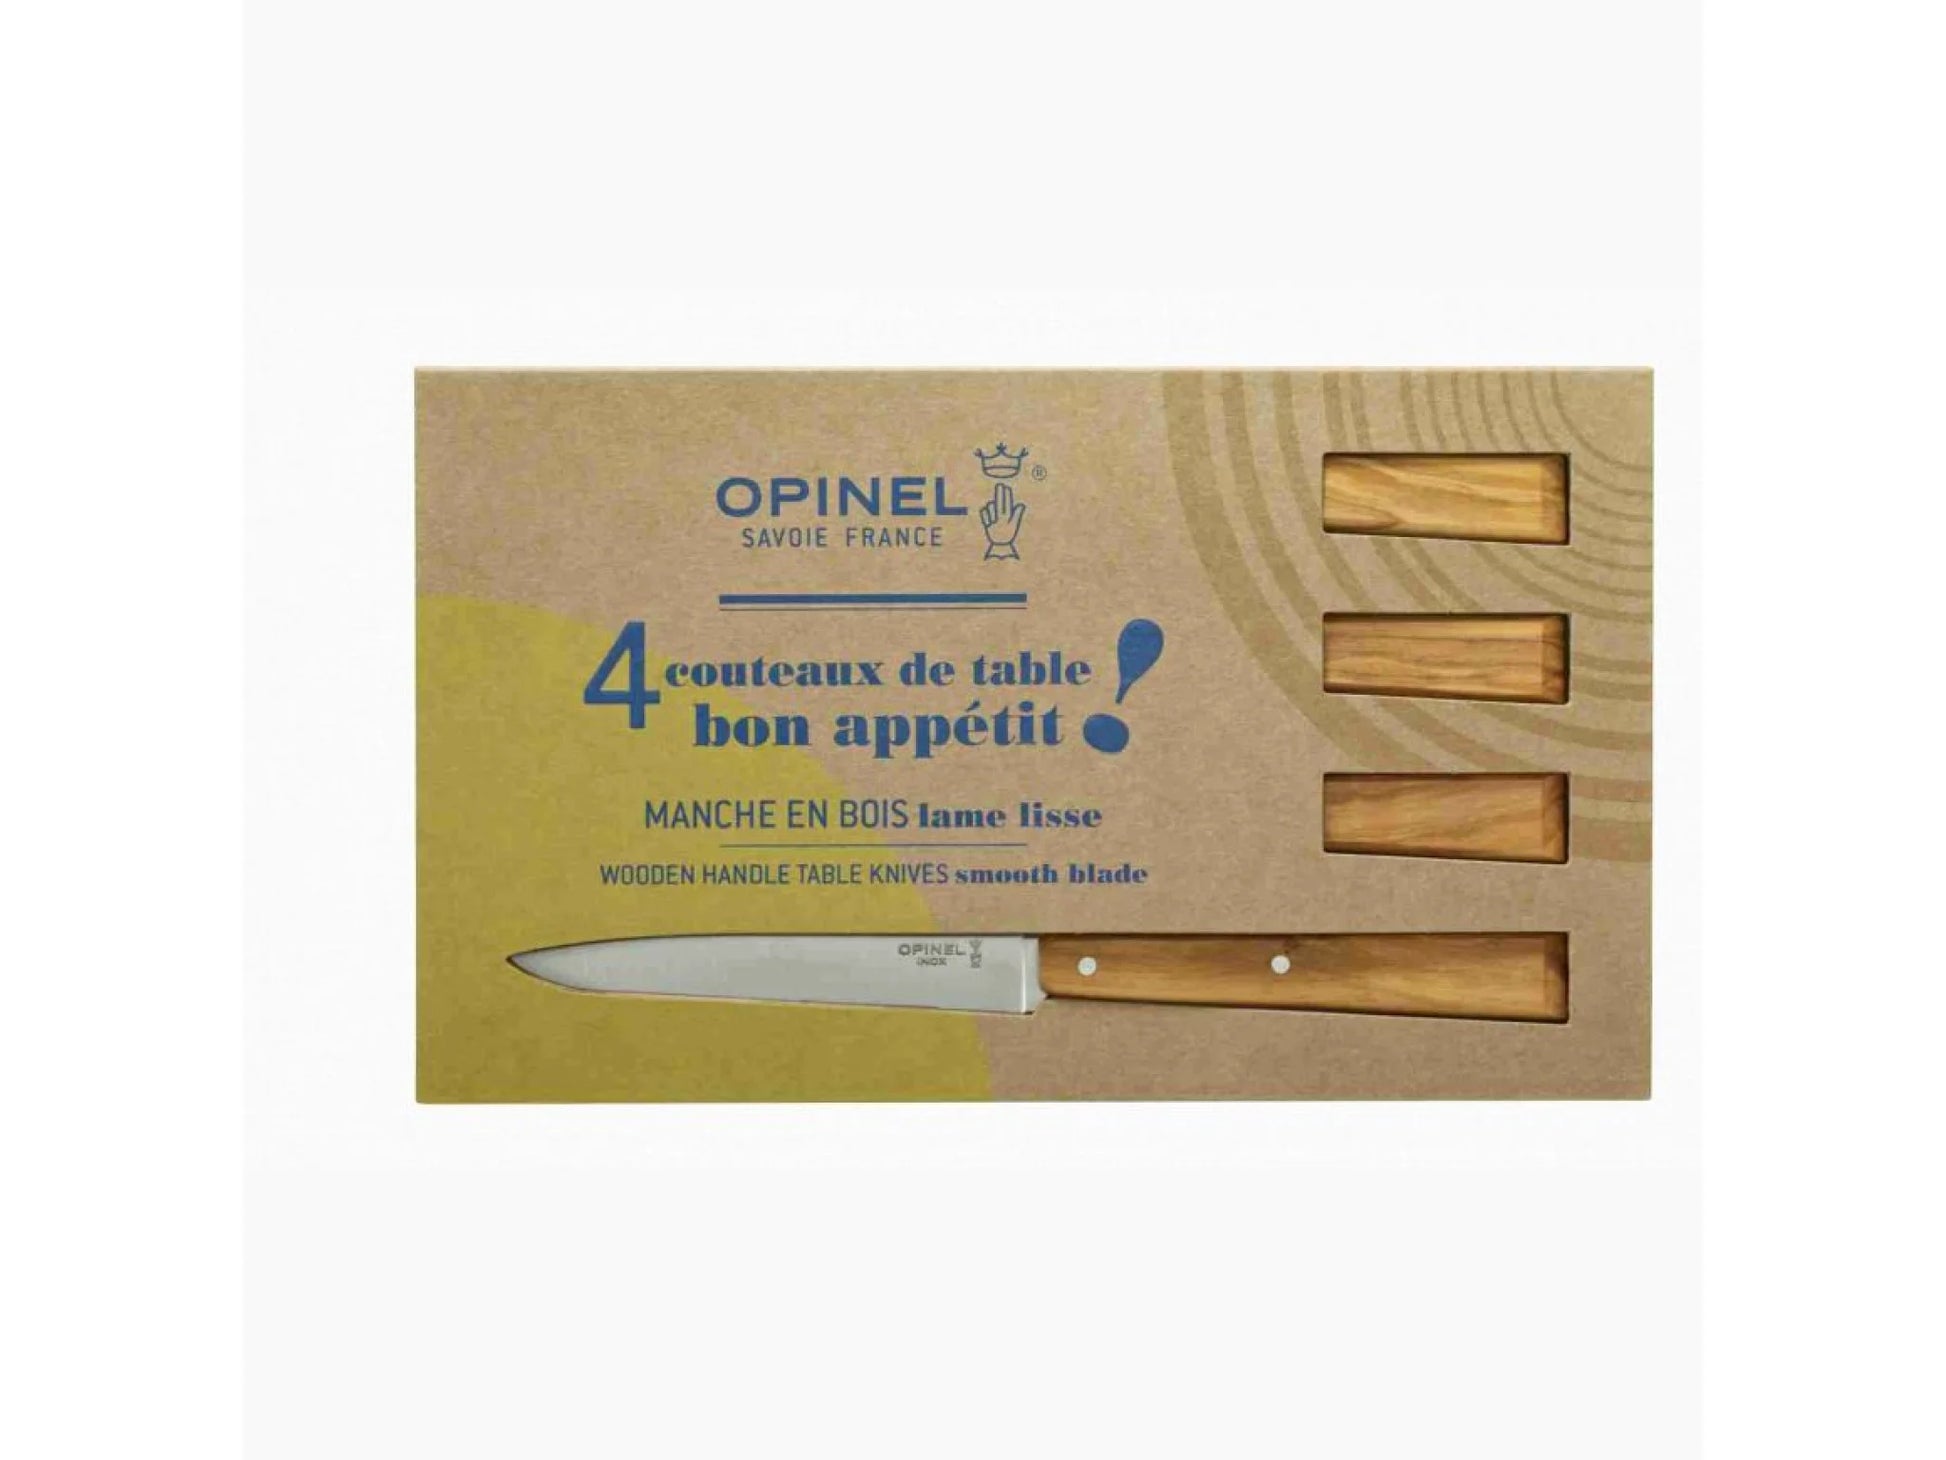 Couteaux de table 125 4 - Olivier - Opinel - Boite de 4